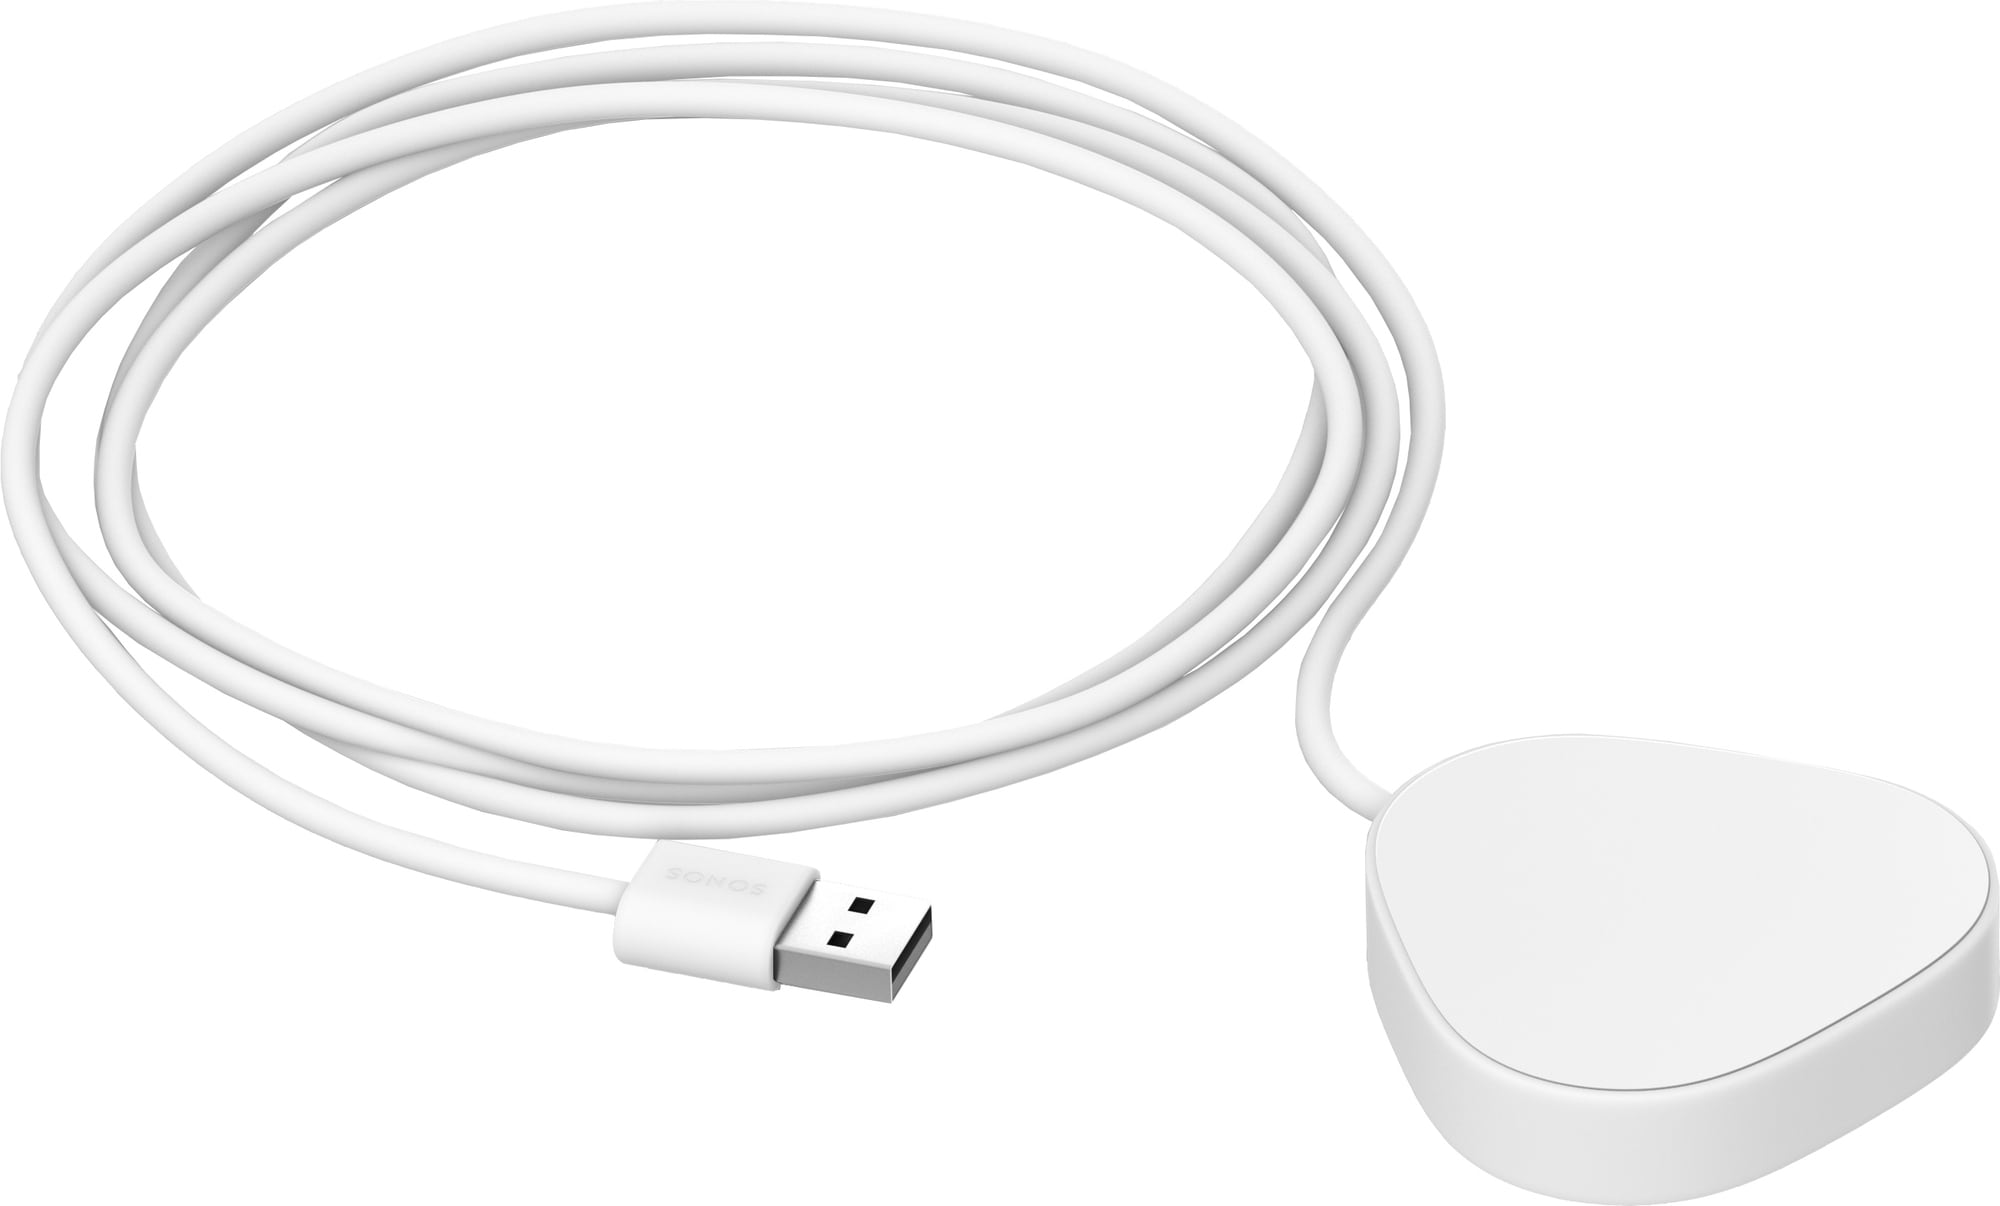 Sonos Roam trådløs lader (hvit) - Ladere og kabler til mobil - Elkjøp